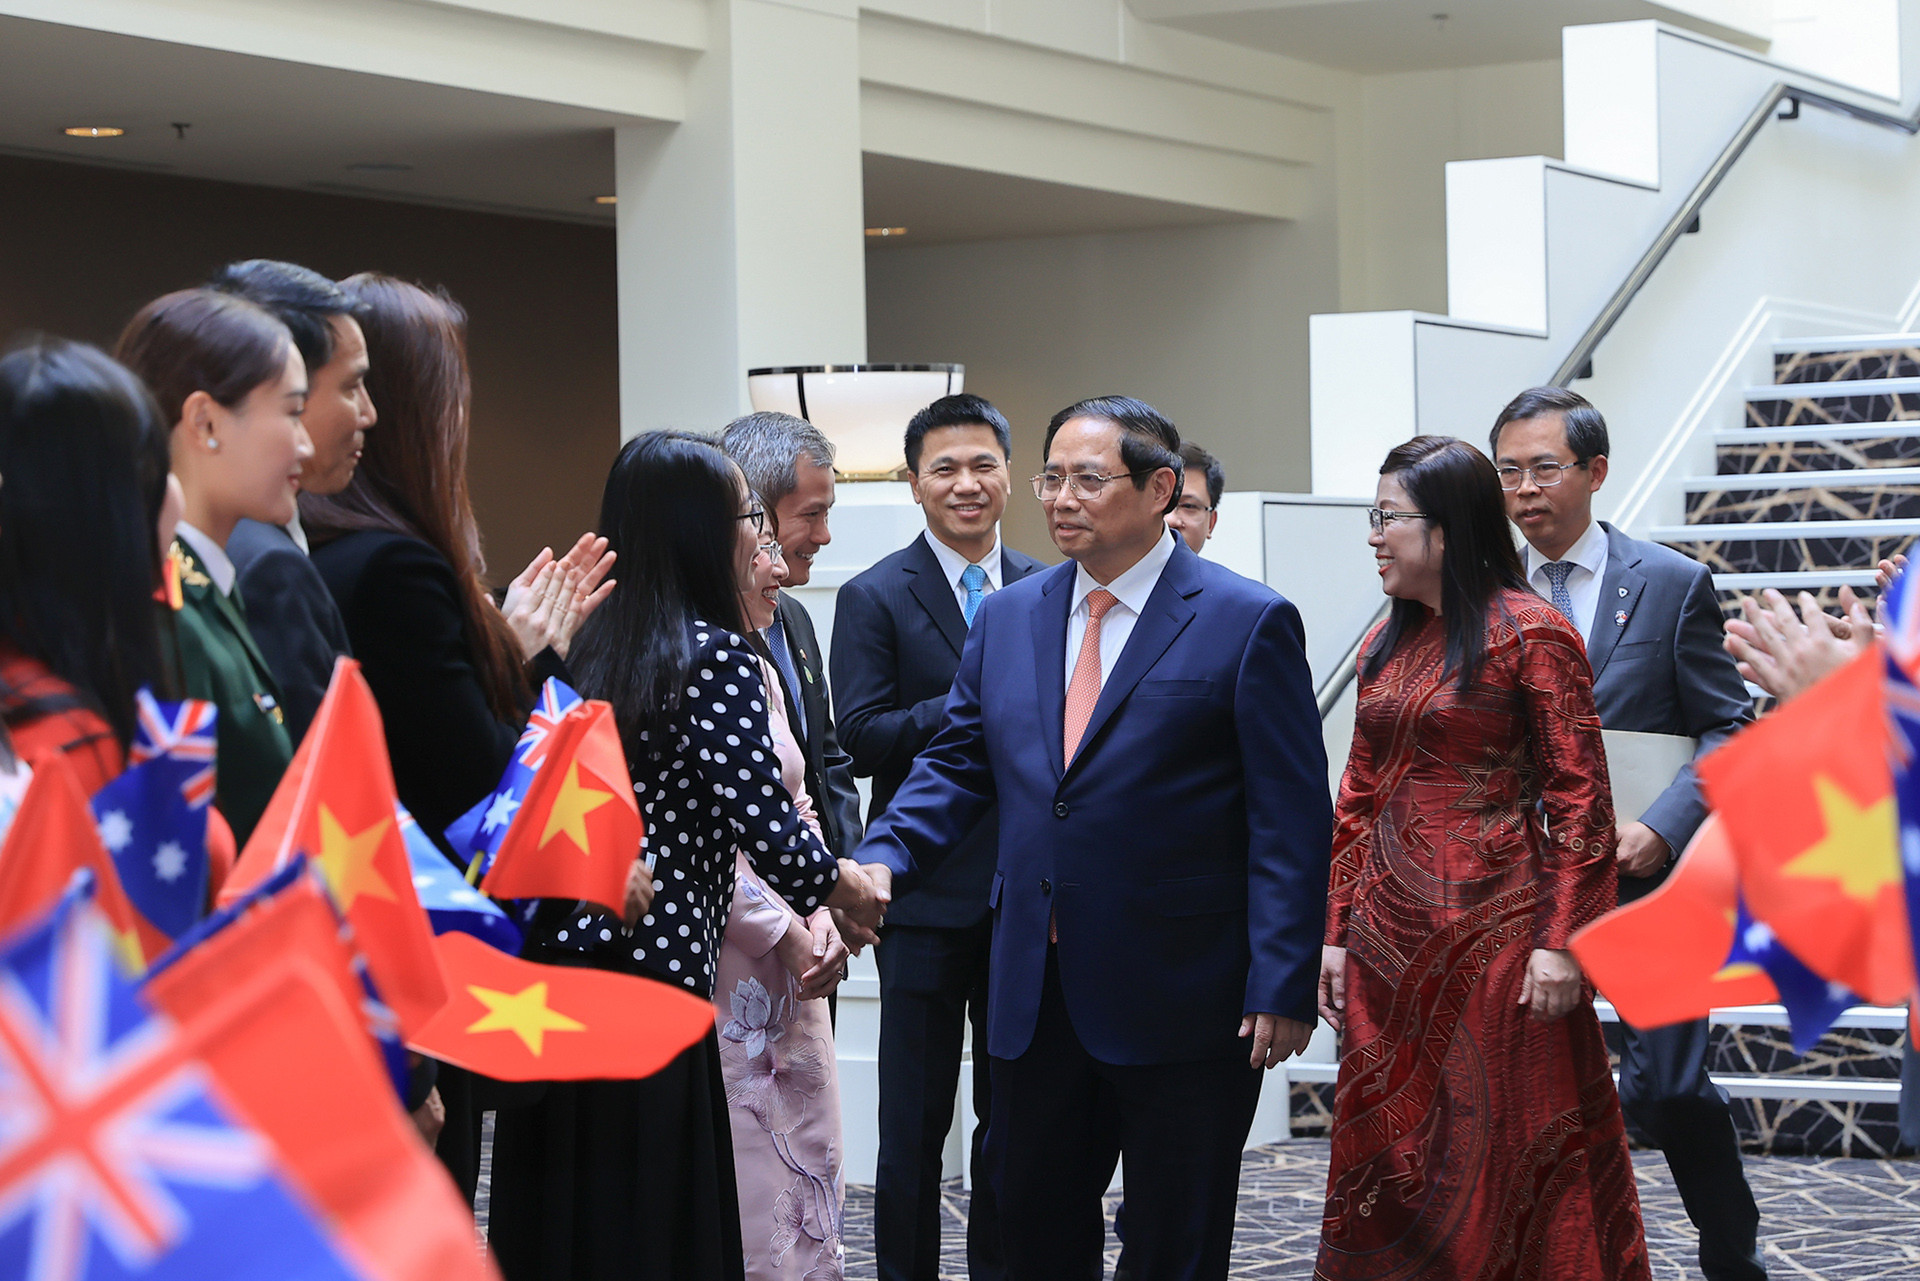 Thủ tướng Phạm Minh Chính cùng Phu nhân và đoàn đại biểu cấp cao Việt Nam tới thăm cán bộ, nhân viên cơ quan đại diện ngoại giao và đại diện cộng đồng người Việt tại Australia - Ảnh: VGP/Nhật Bắc